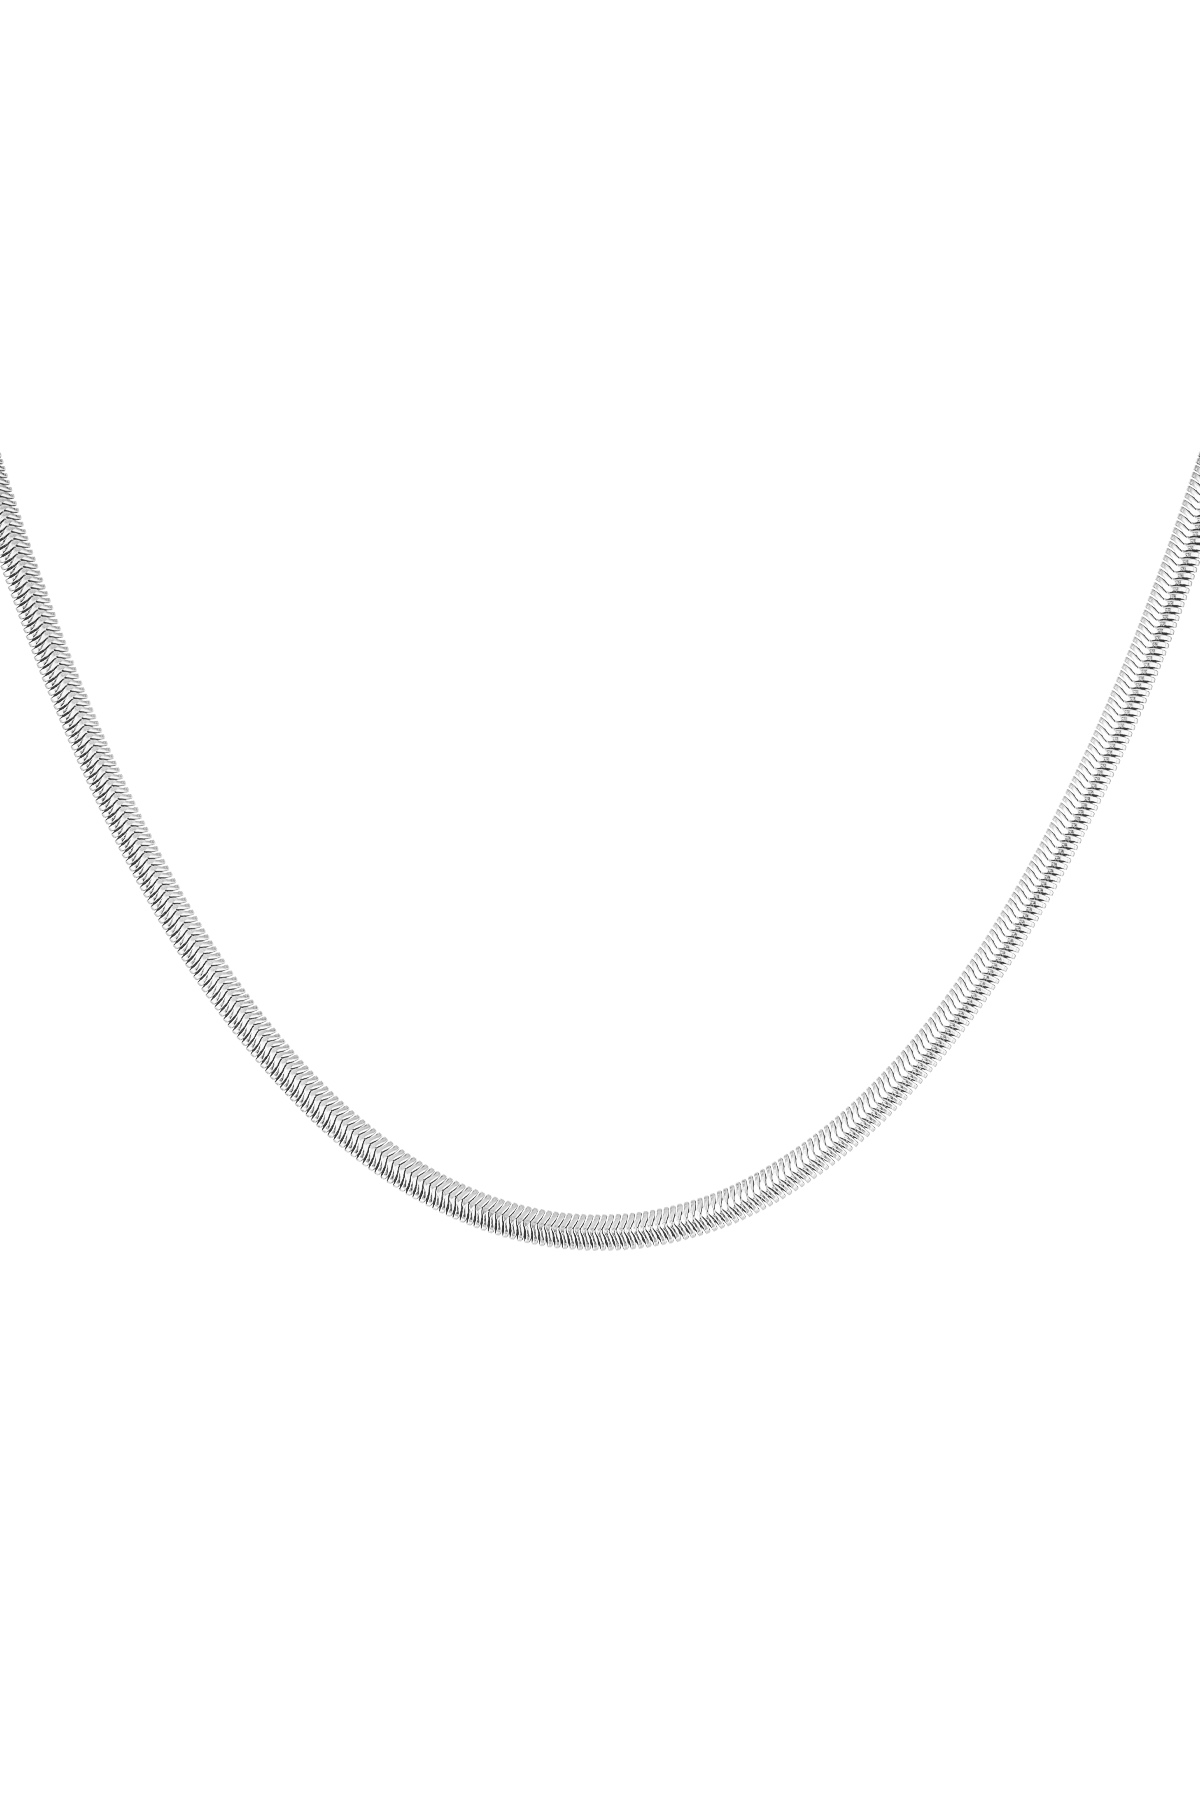 Halskette flach mit Aufdruck - Silber - 4,0MM